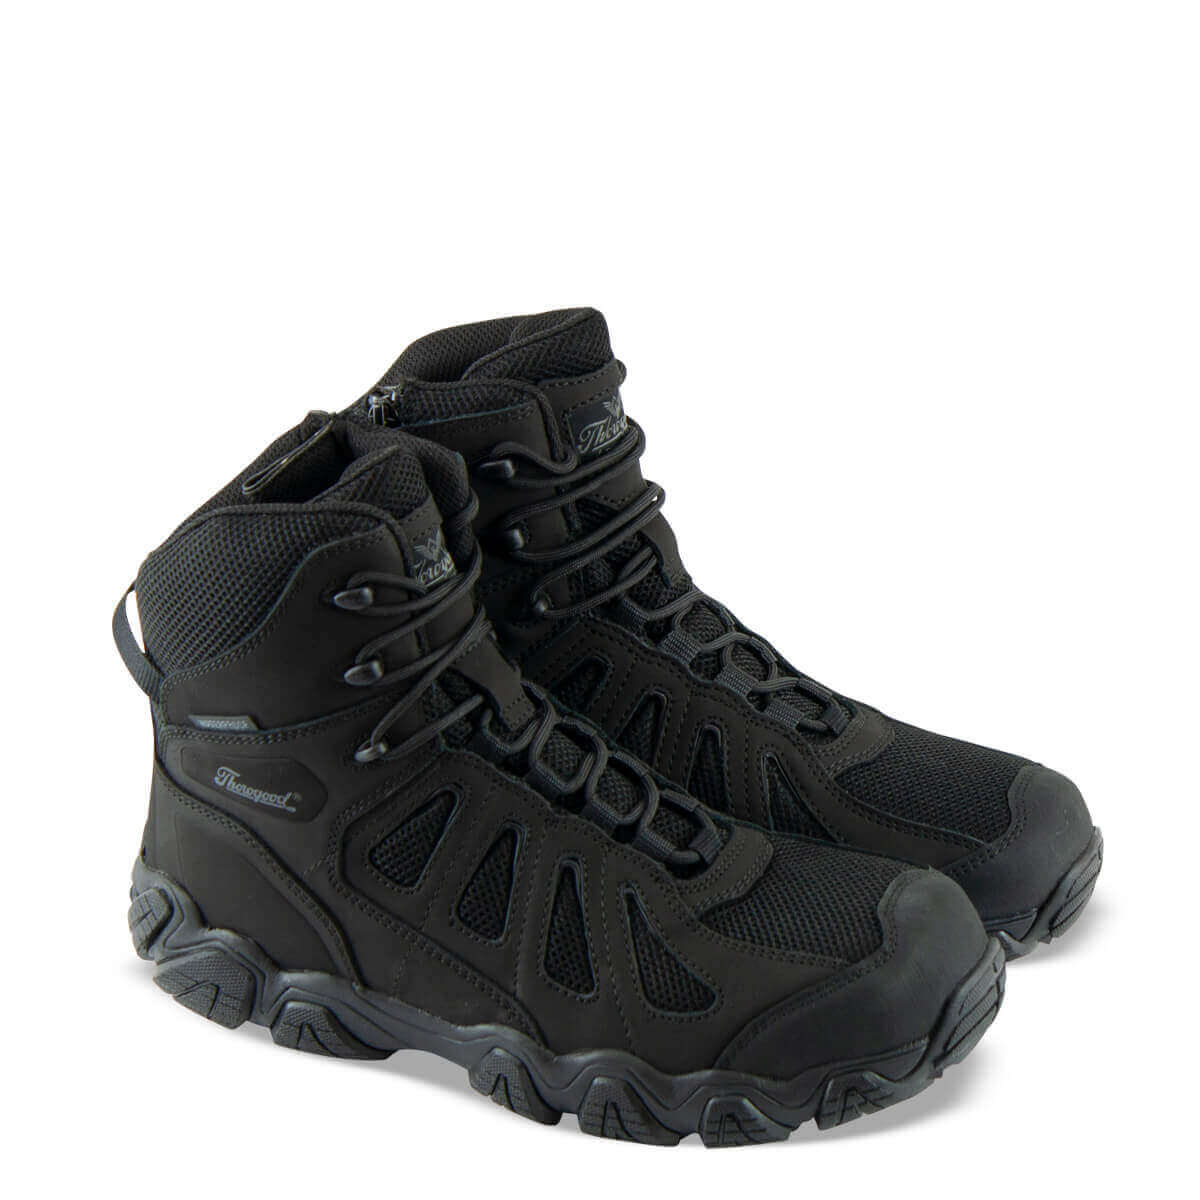 pair shot of the crosstrex series waterproof safety toe side zip BBP 6" boot